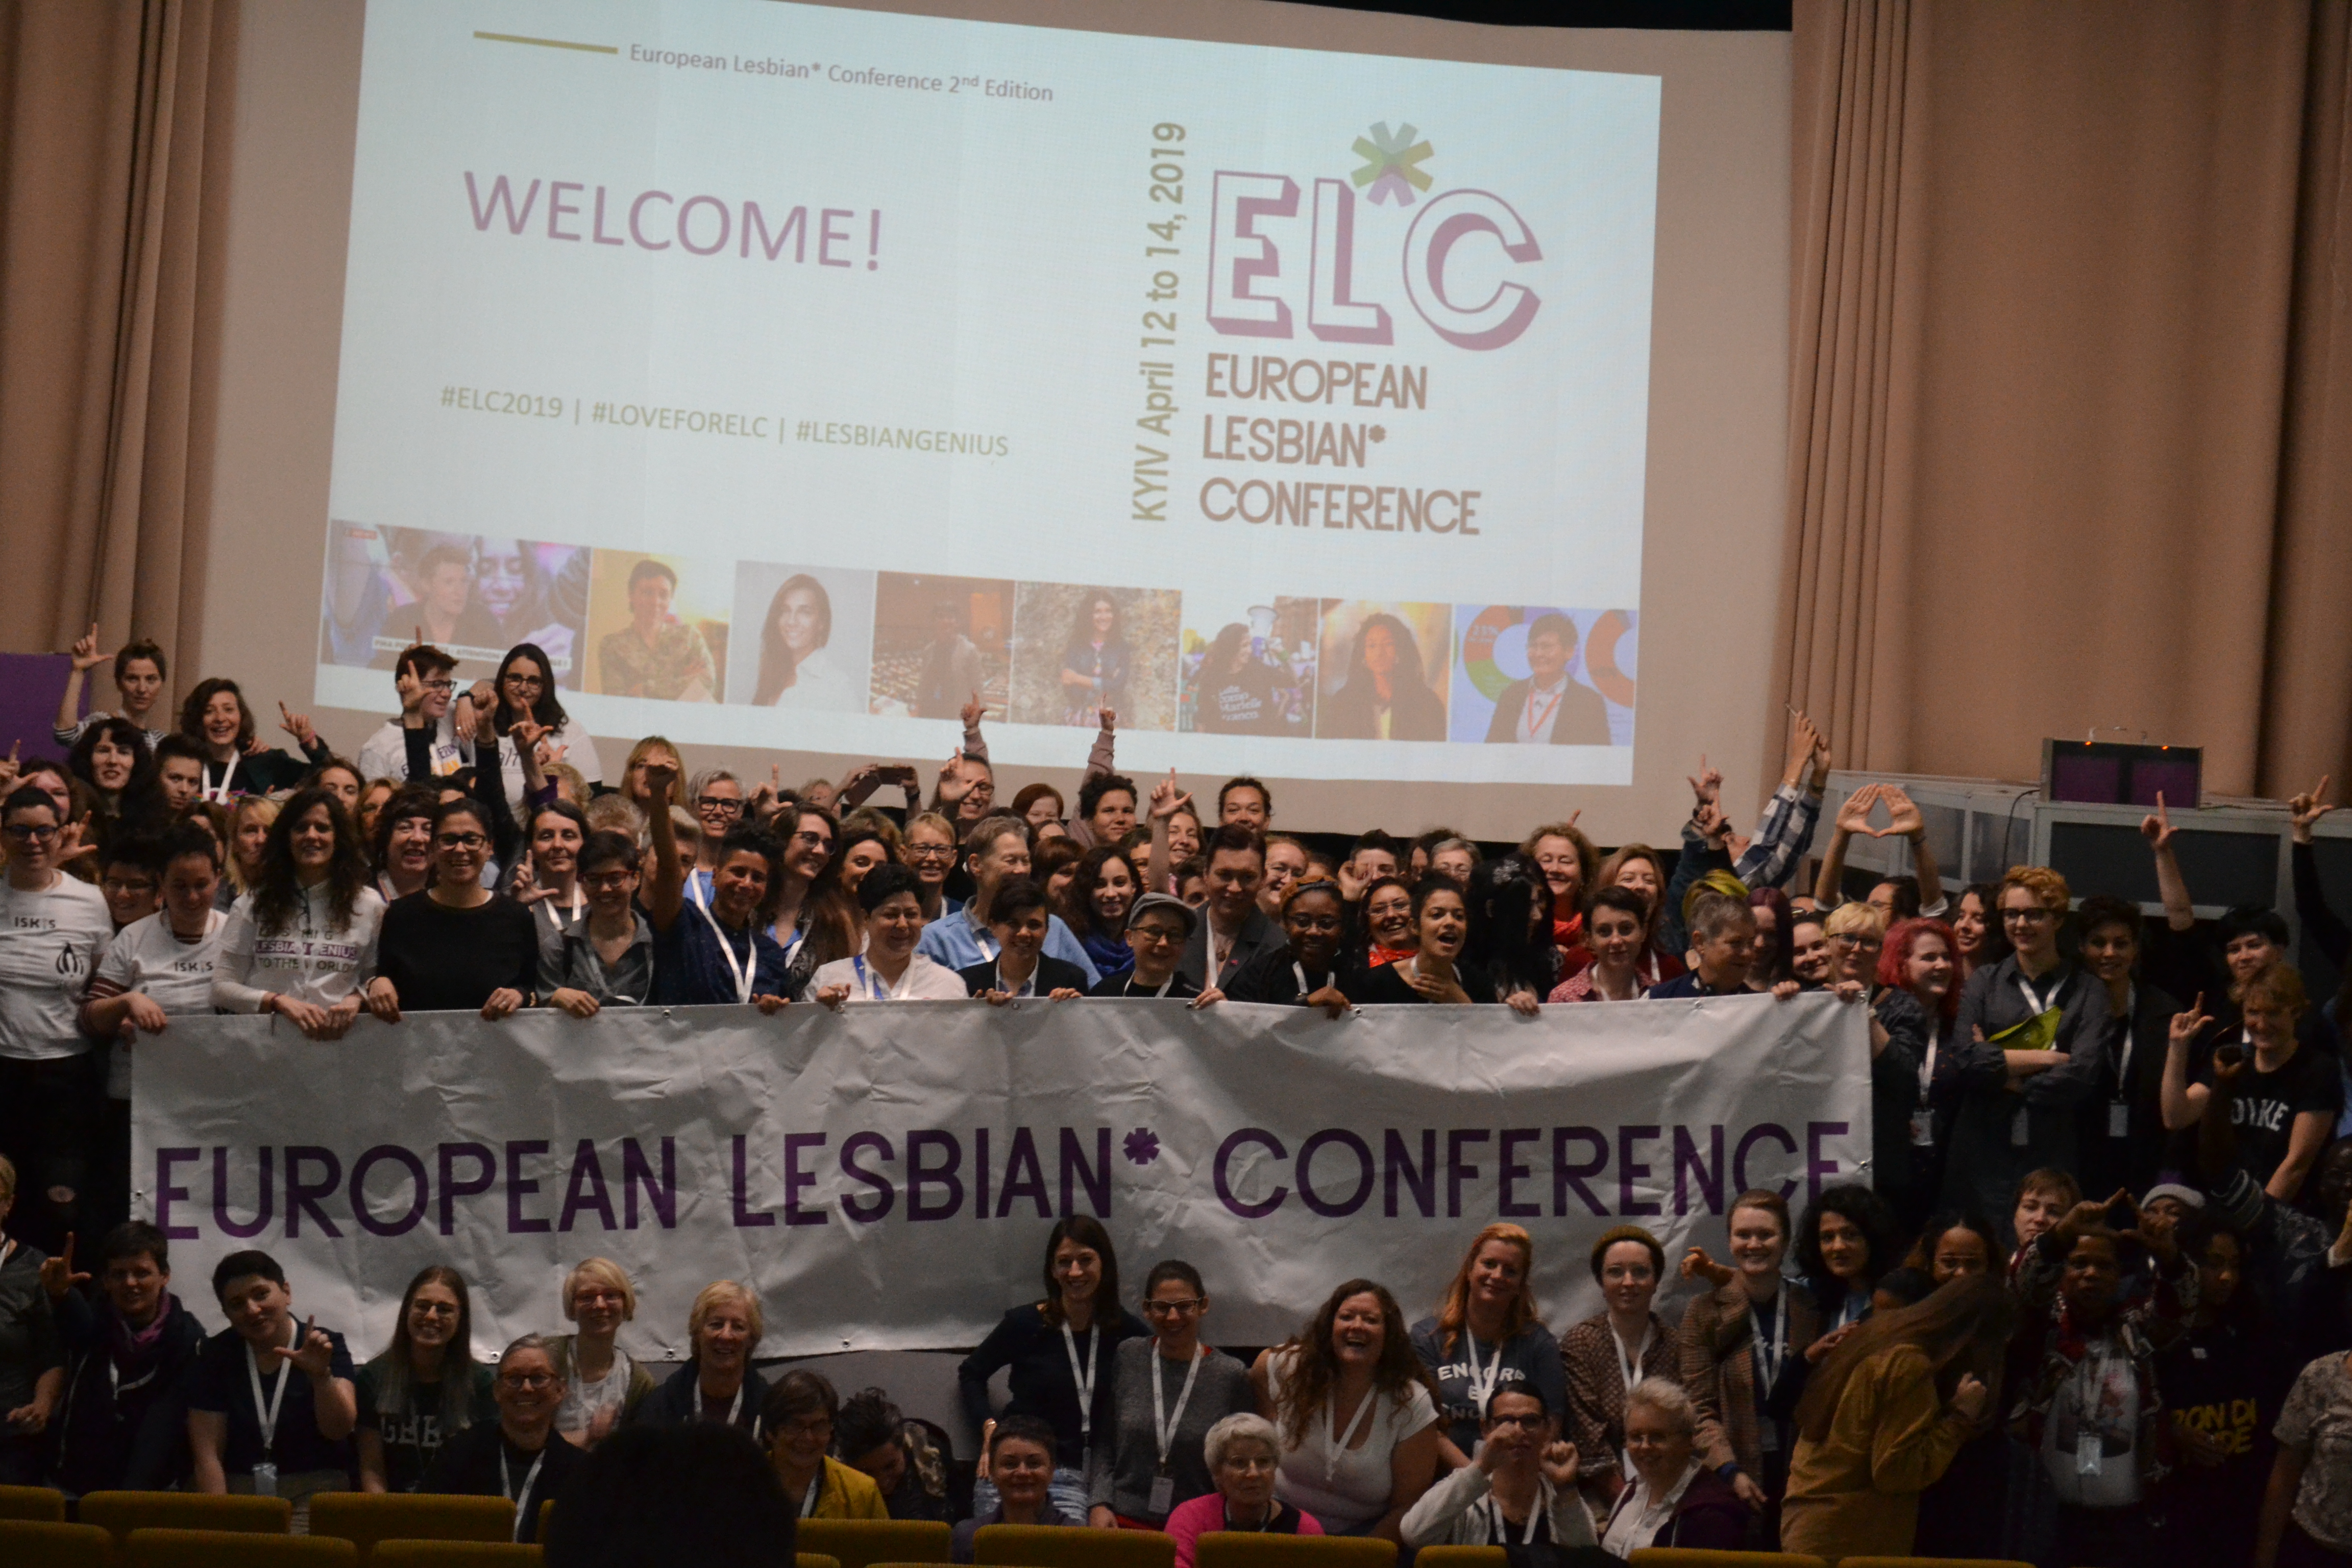 #2 European Lesbian* Conference in Kiev